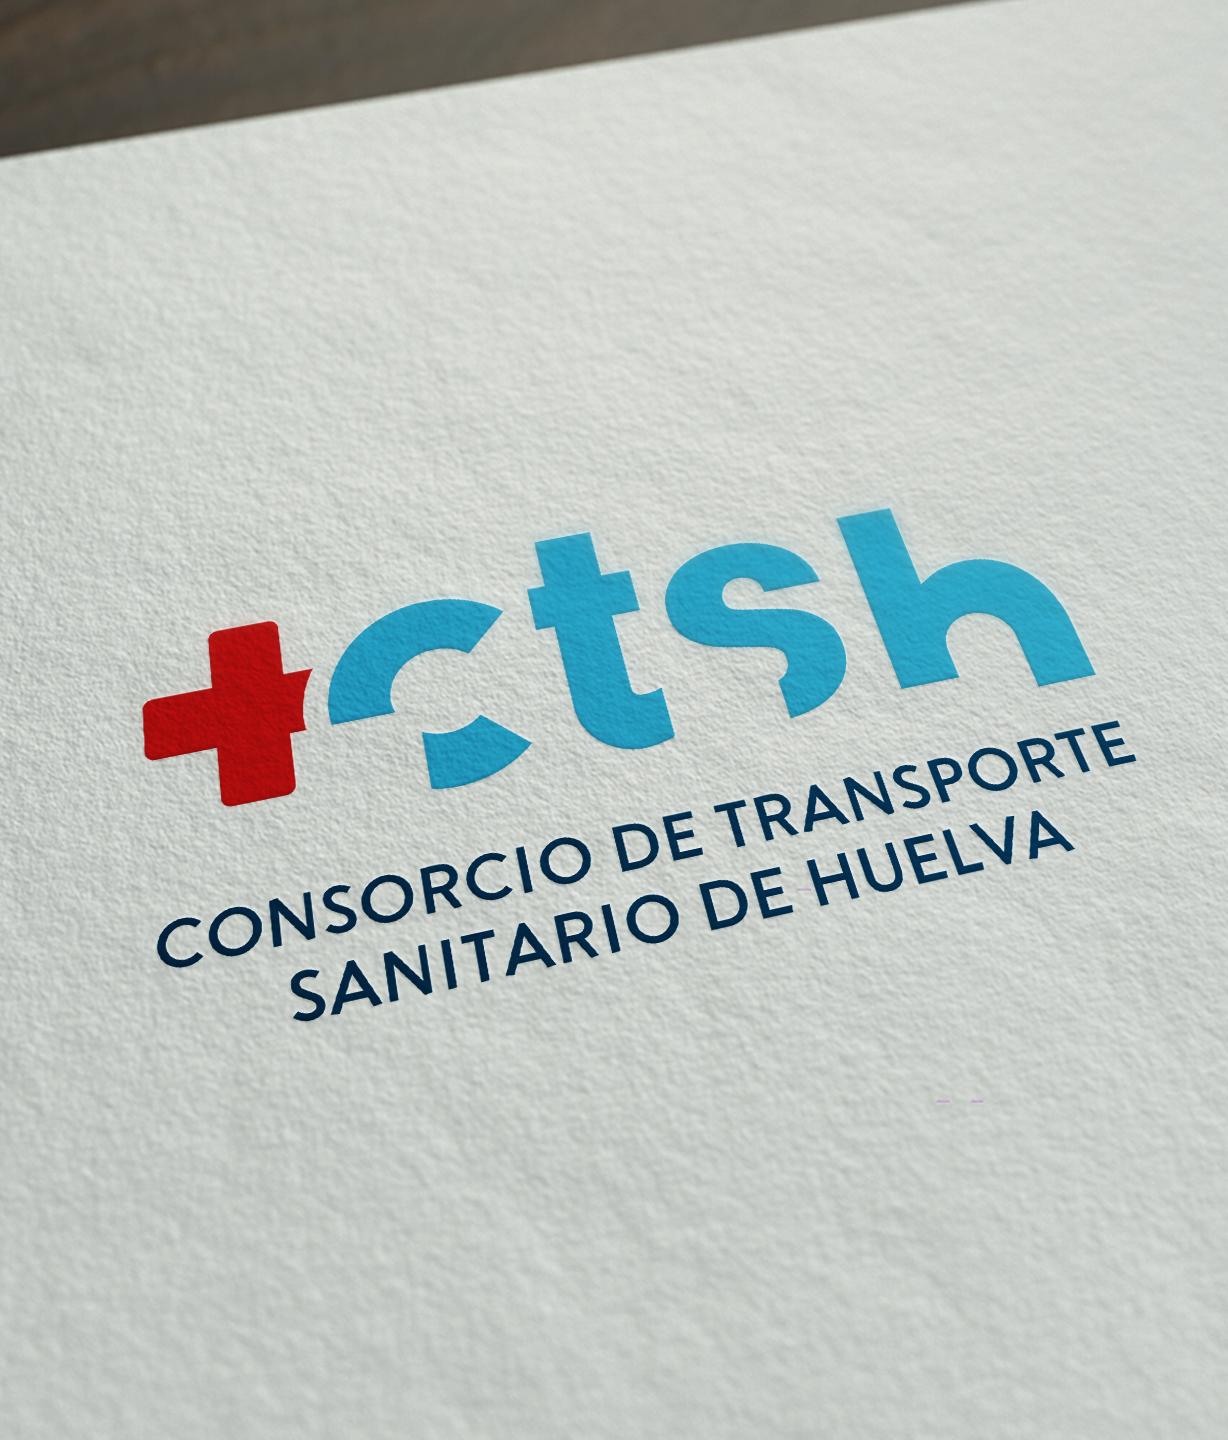 Imagen Corporativa para el Consorcio de Transporte de Sanitario de Huelva